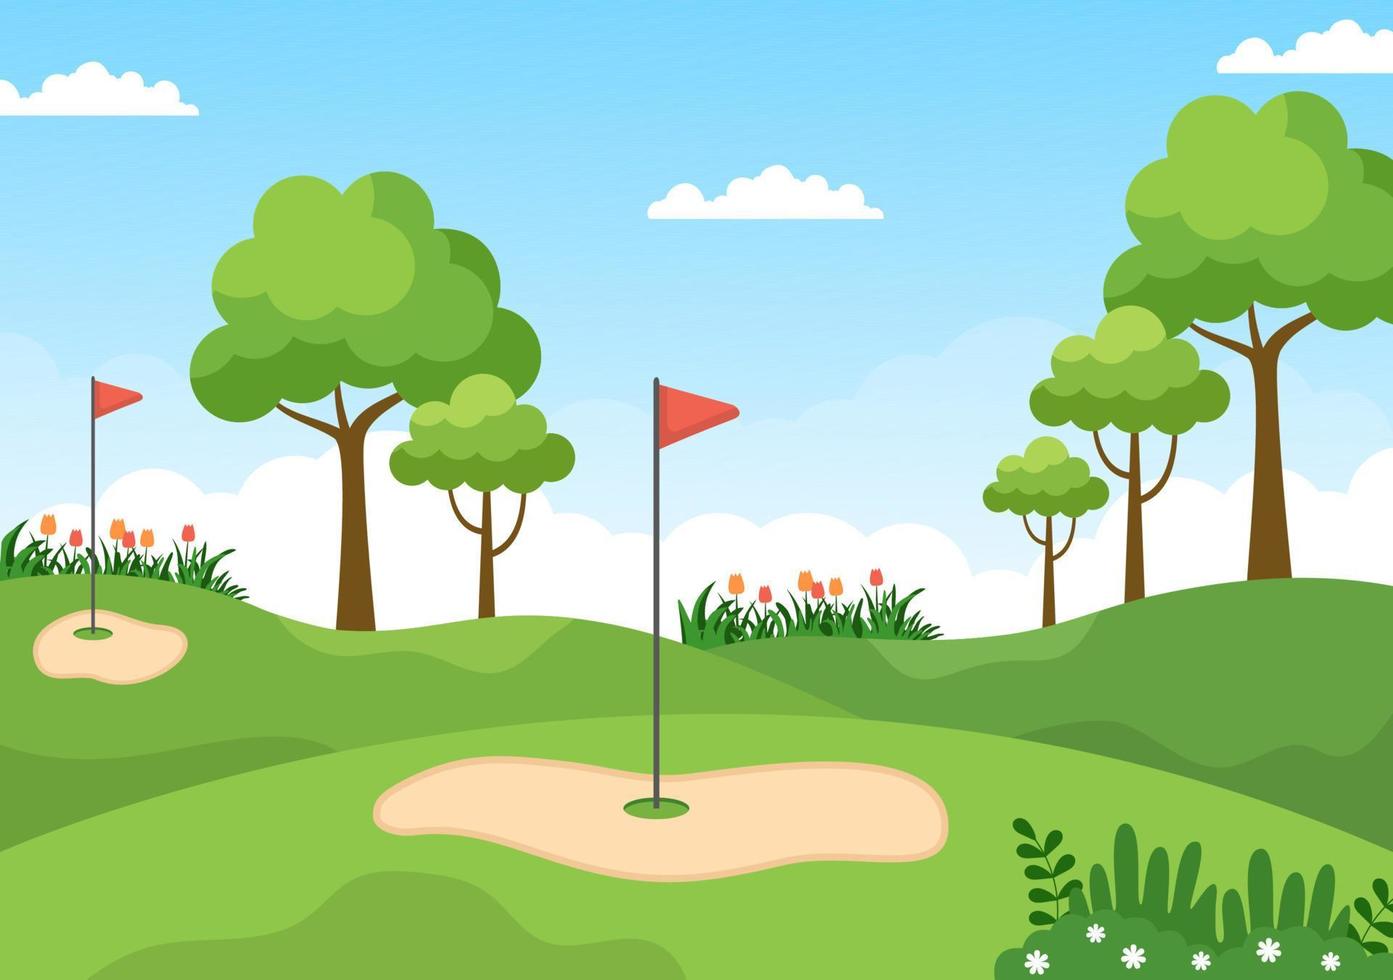 spielen von golfsport mit flaggen, sandboden, sandbunker und ausrüstung auf grünen pflanzen im freien hof in flacher karikaturhintergrundillustration vektor